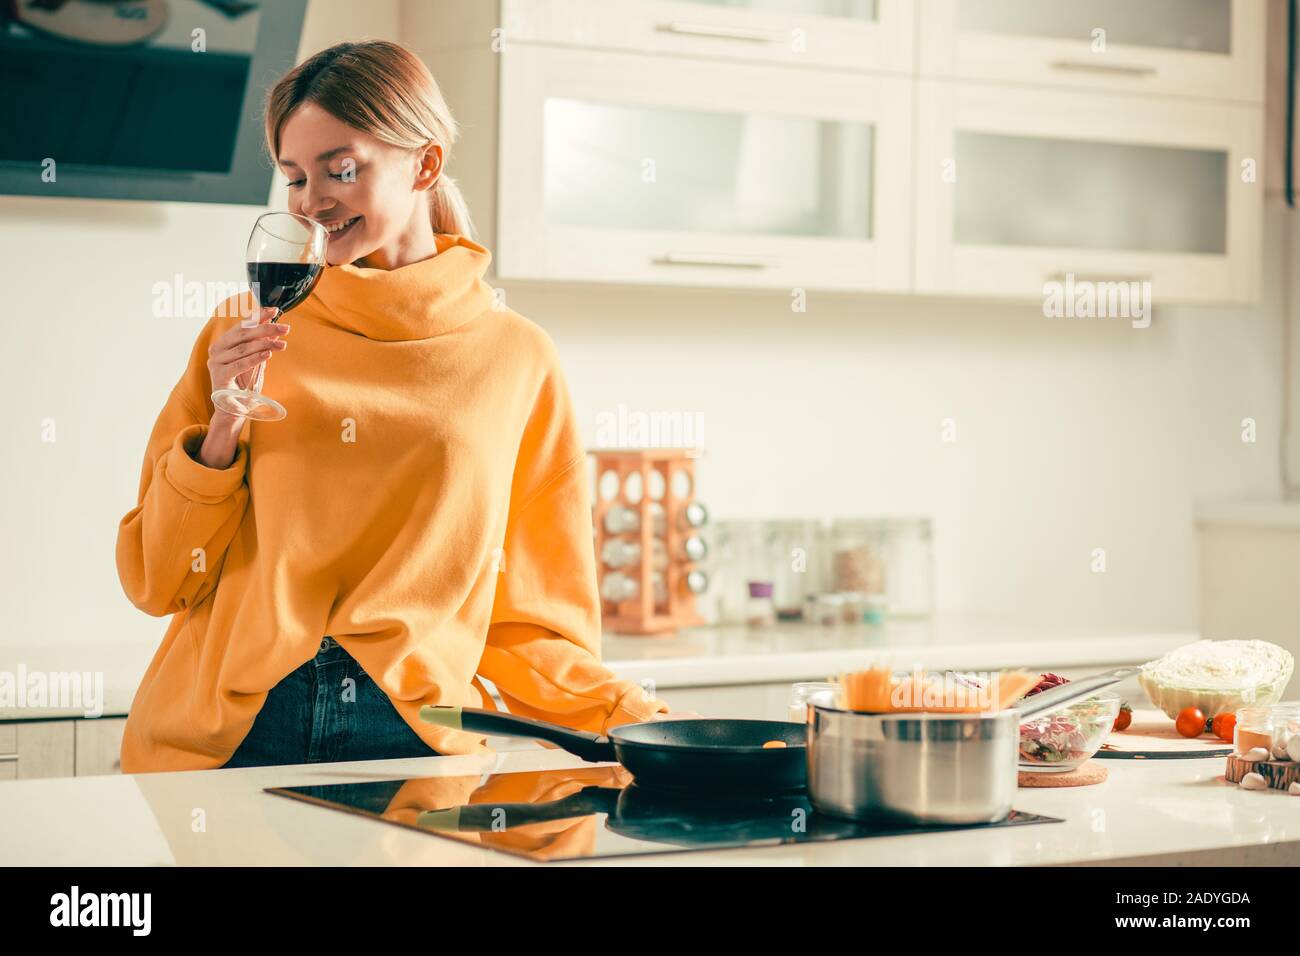 Glückliche junge Dame das Trinken von Wein in der Küche und lächelnd Stockfoto